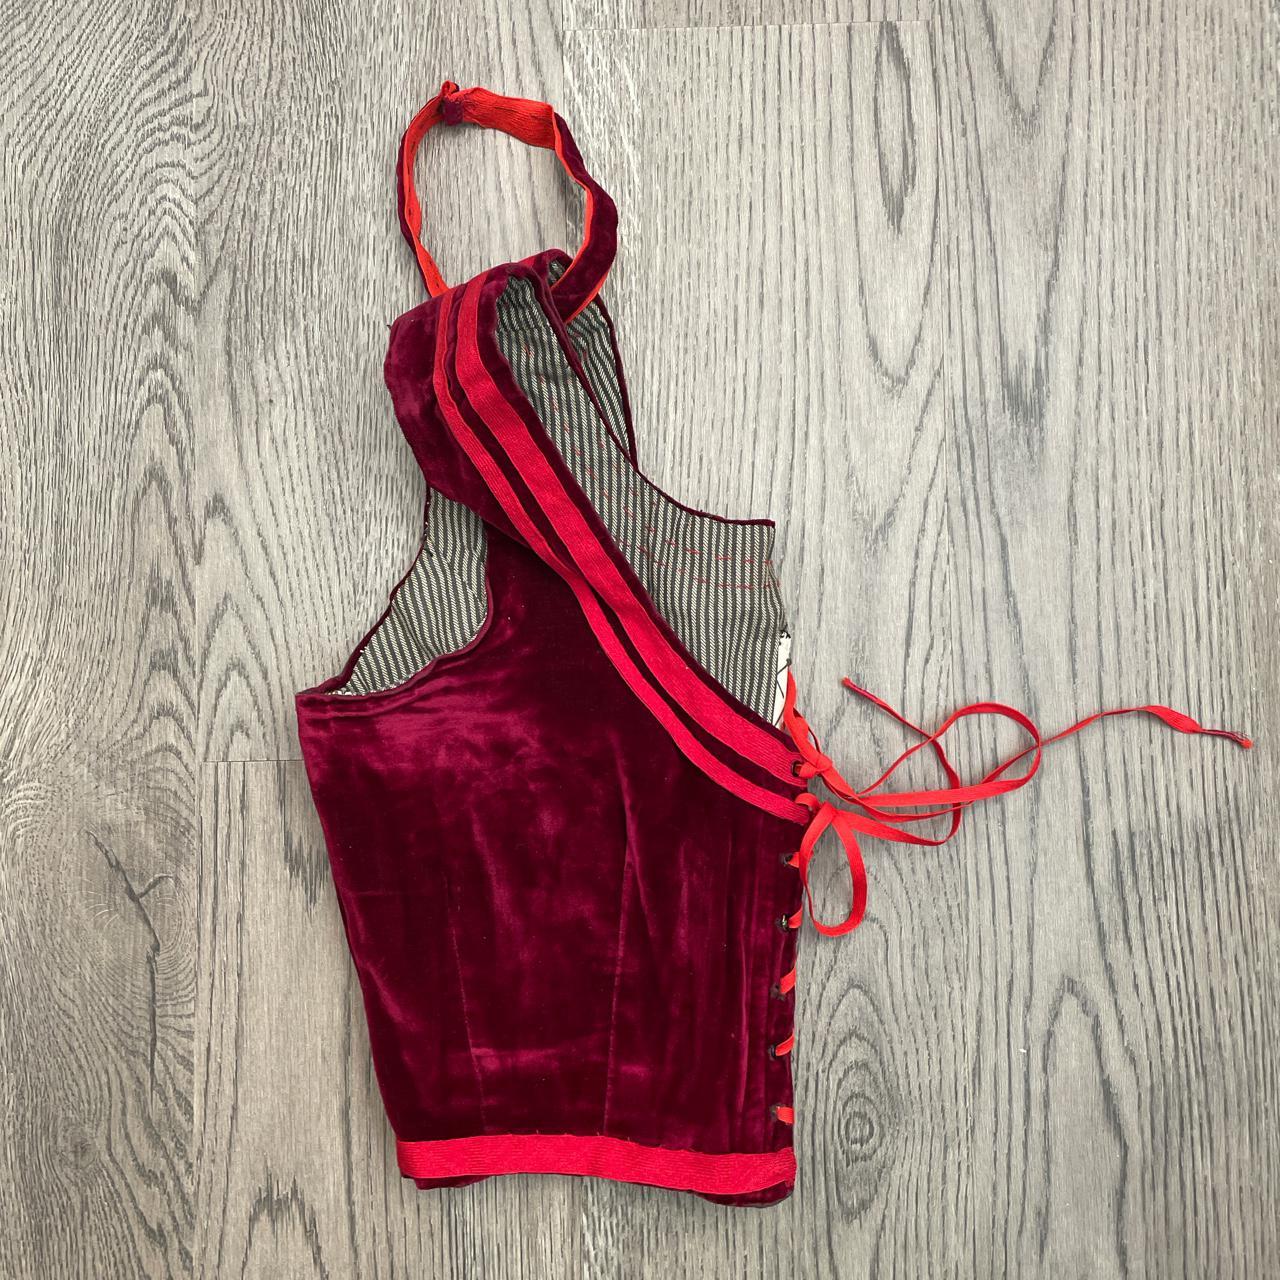 Product Image 4 - Red velvet corset style bralette